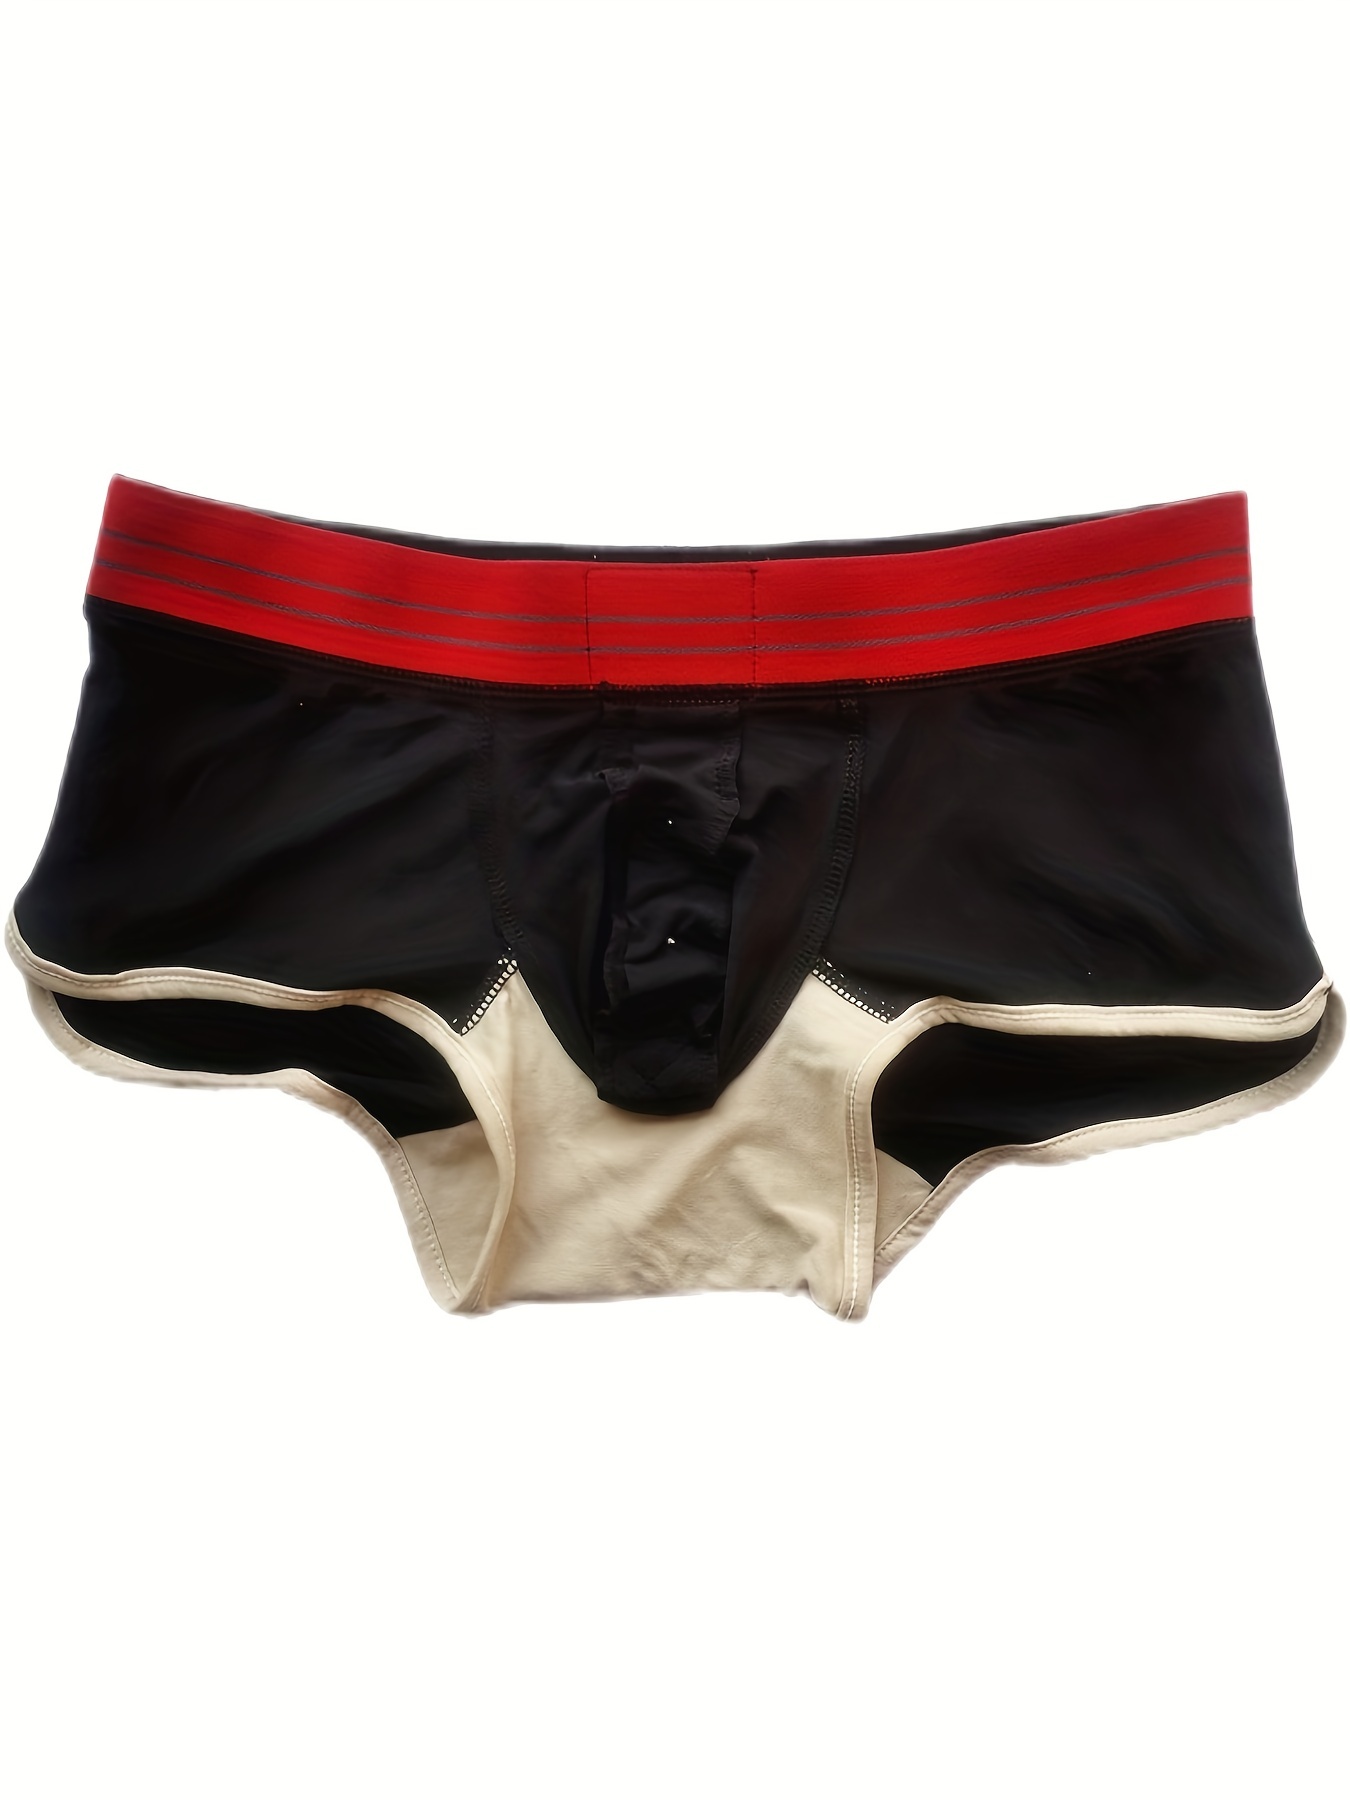 Men's Underwear Cotton Boxer Briefs Open Front Bulge U Pouch Panties  Boxershorts